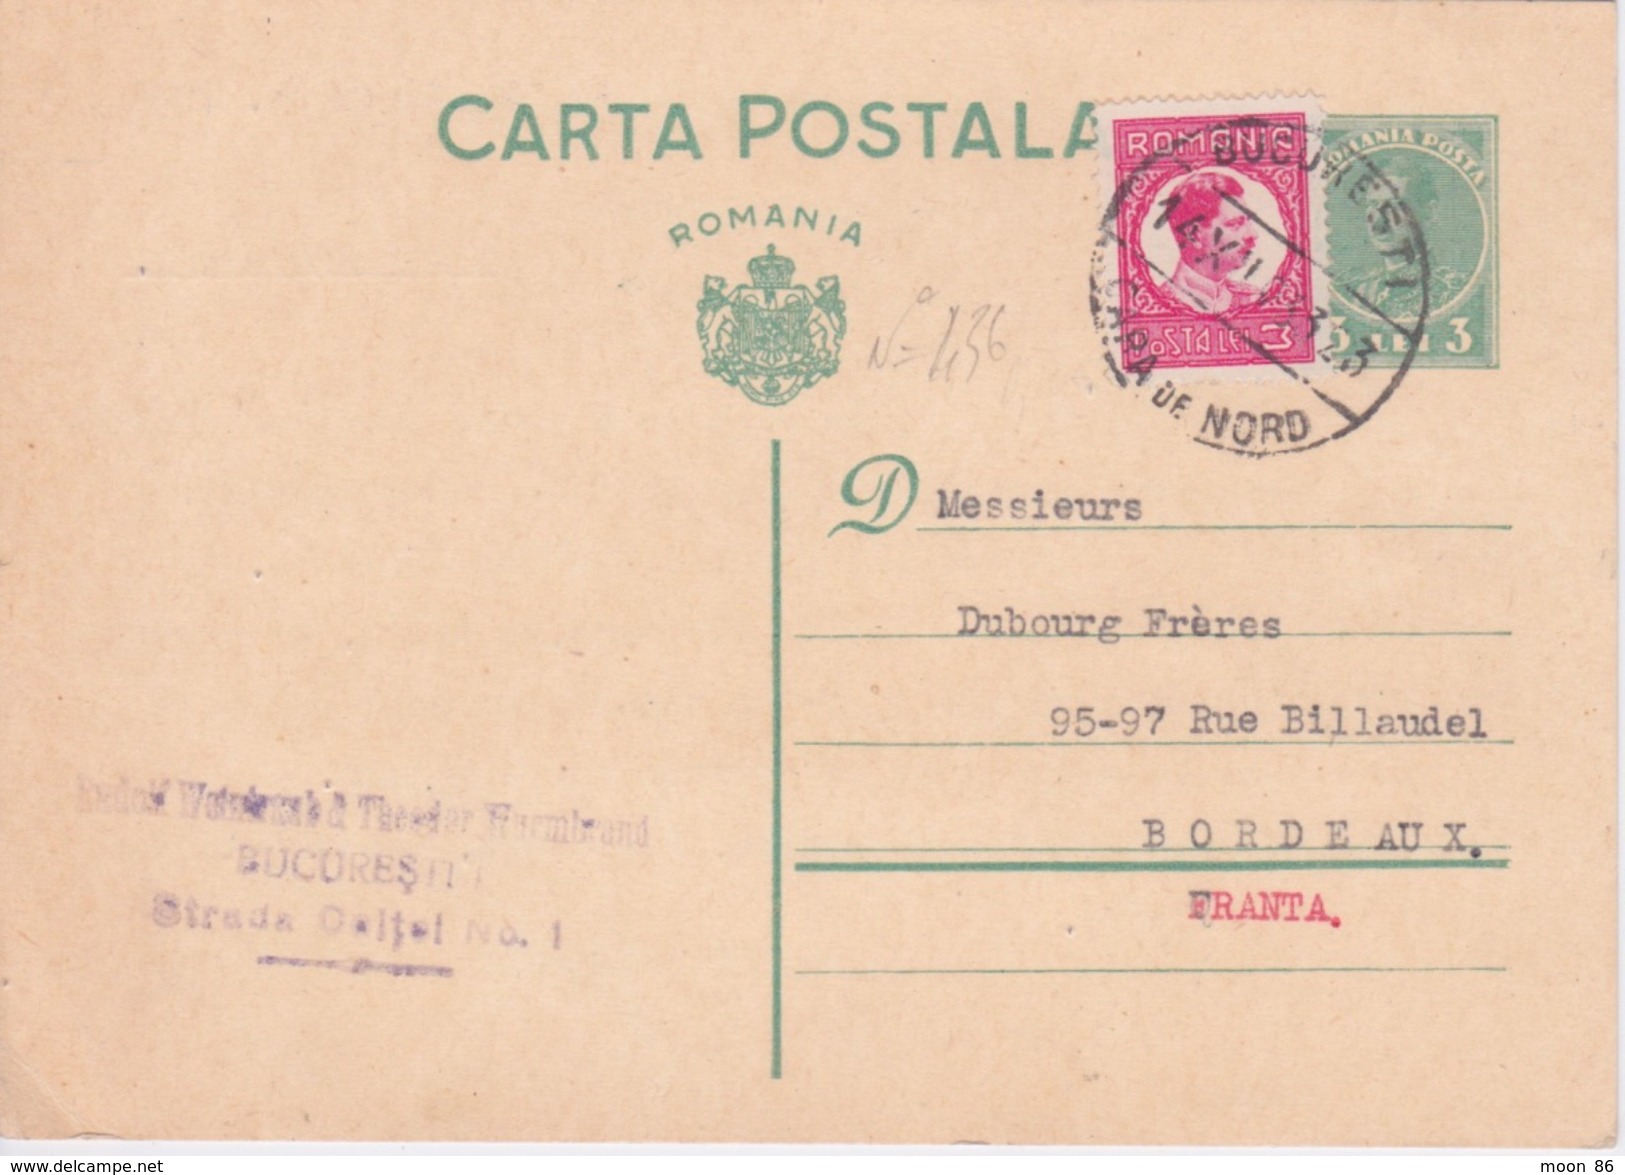 ROUMANIE - ENTIER POSTAL - 1933 - BUCAREST TO BORDEAUX - CACHET DE LA POSTE SUR TIMBRE N 436 - Marcophilie